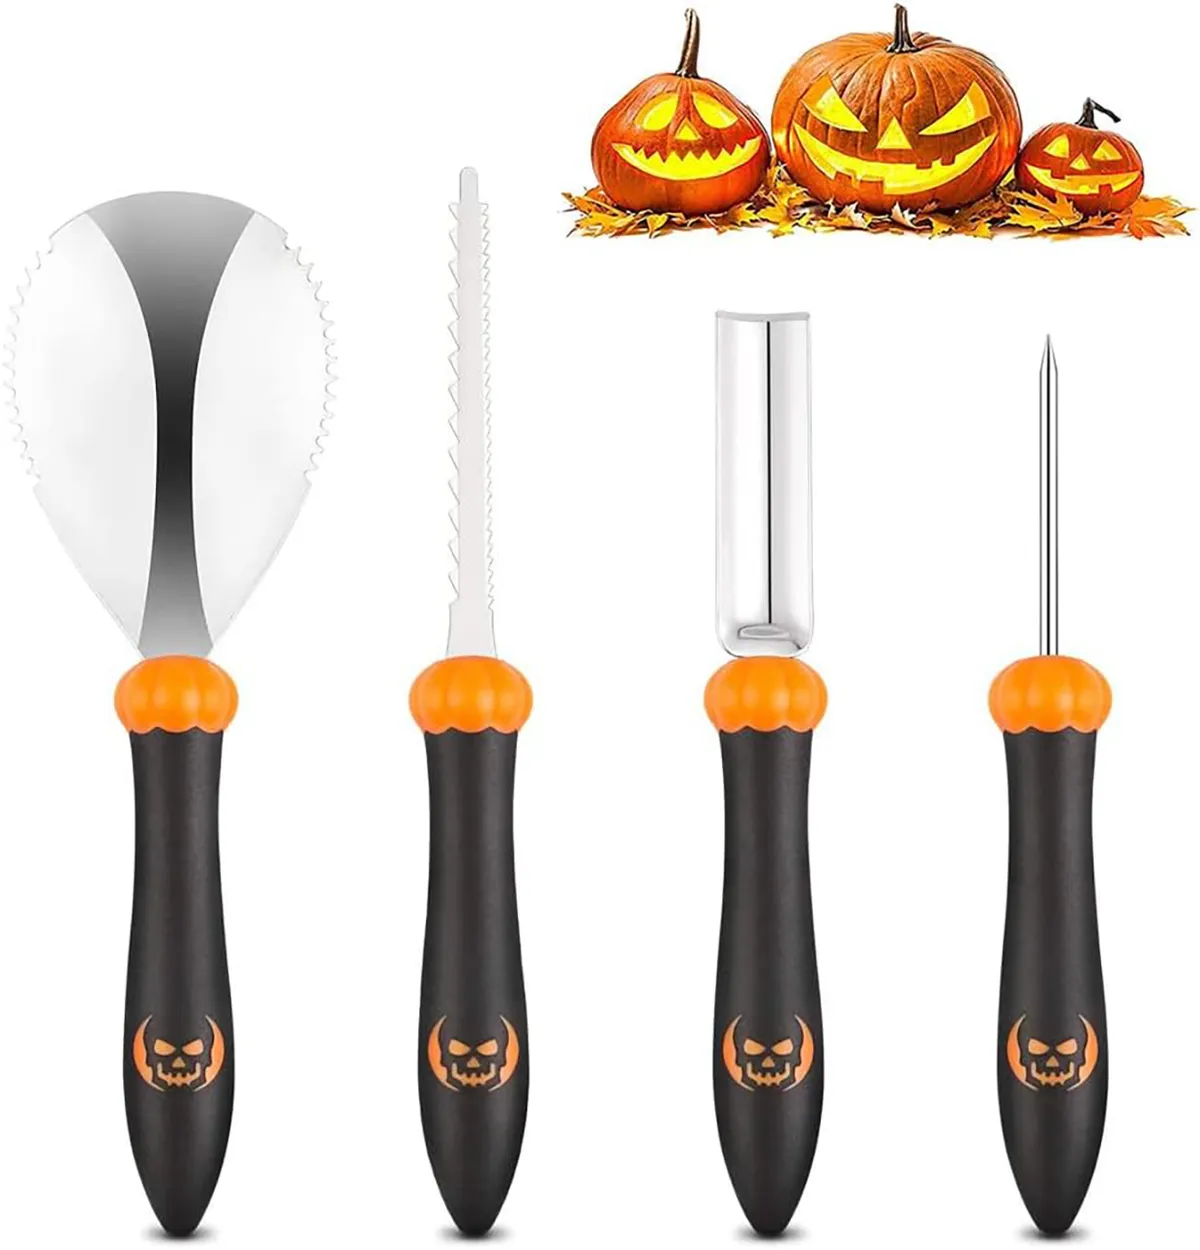 pumpkin carving kits